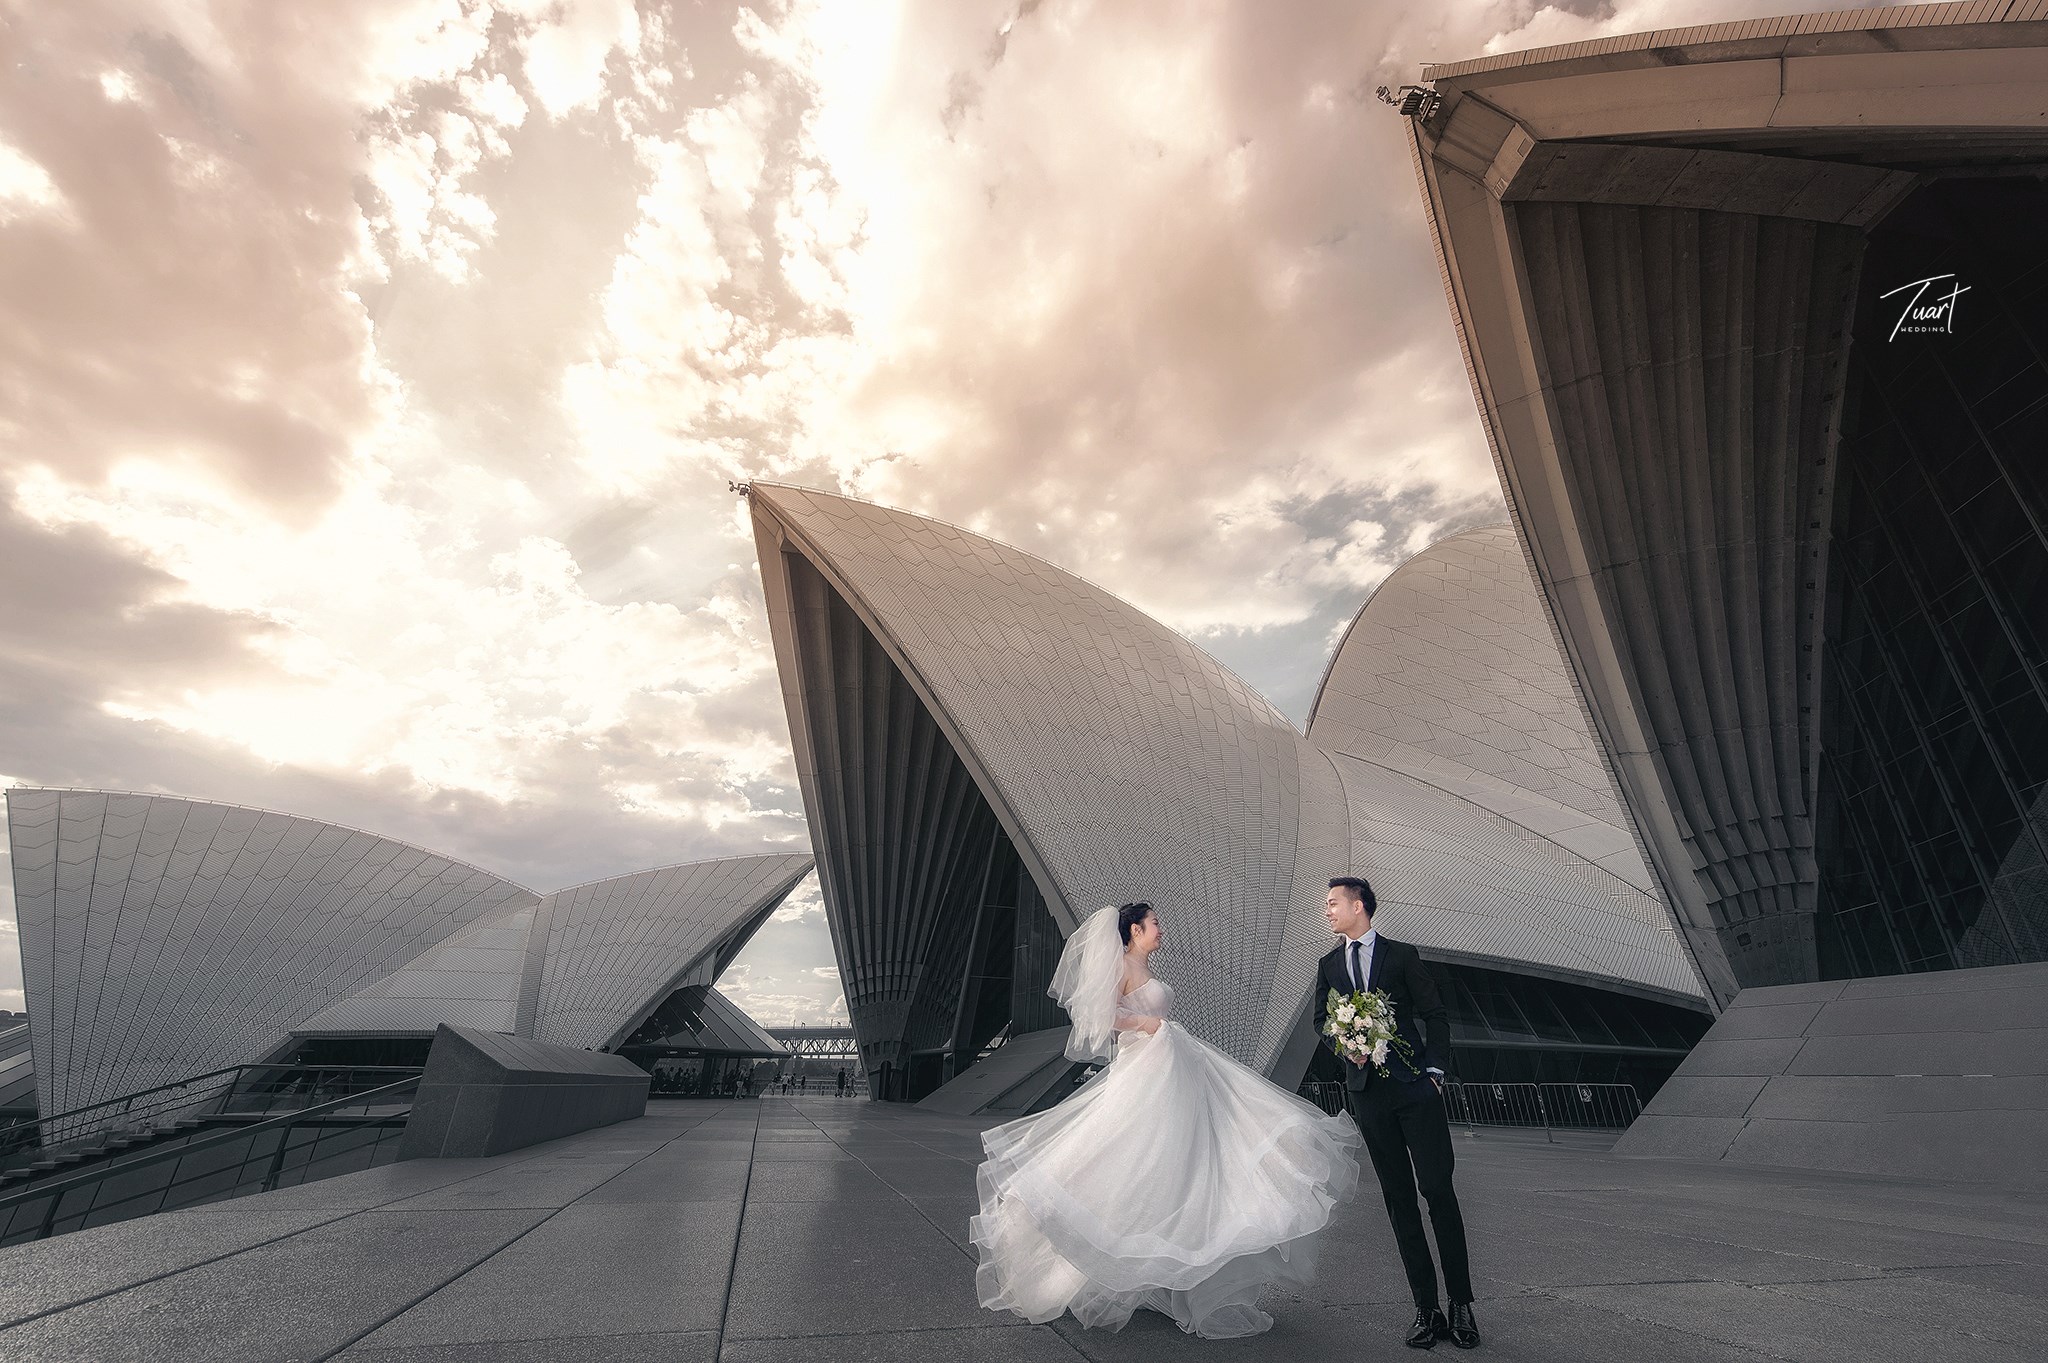 Album chụp ảnh cưới đẹp tại Australia: Jack-Rose 2